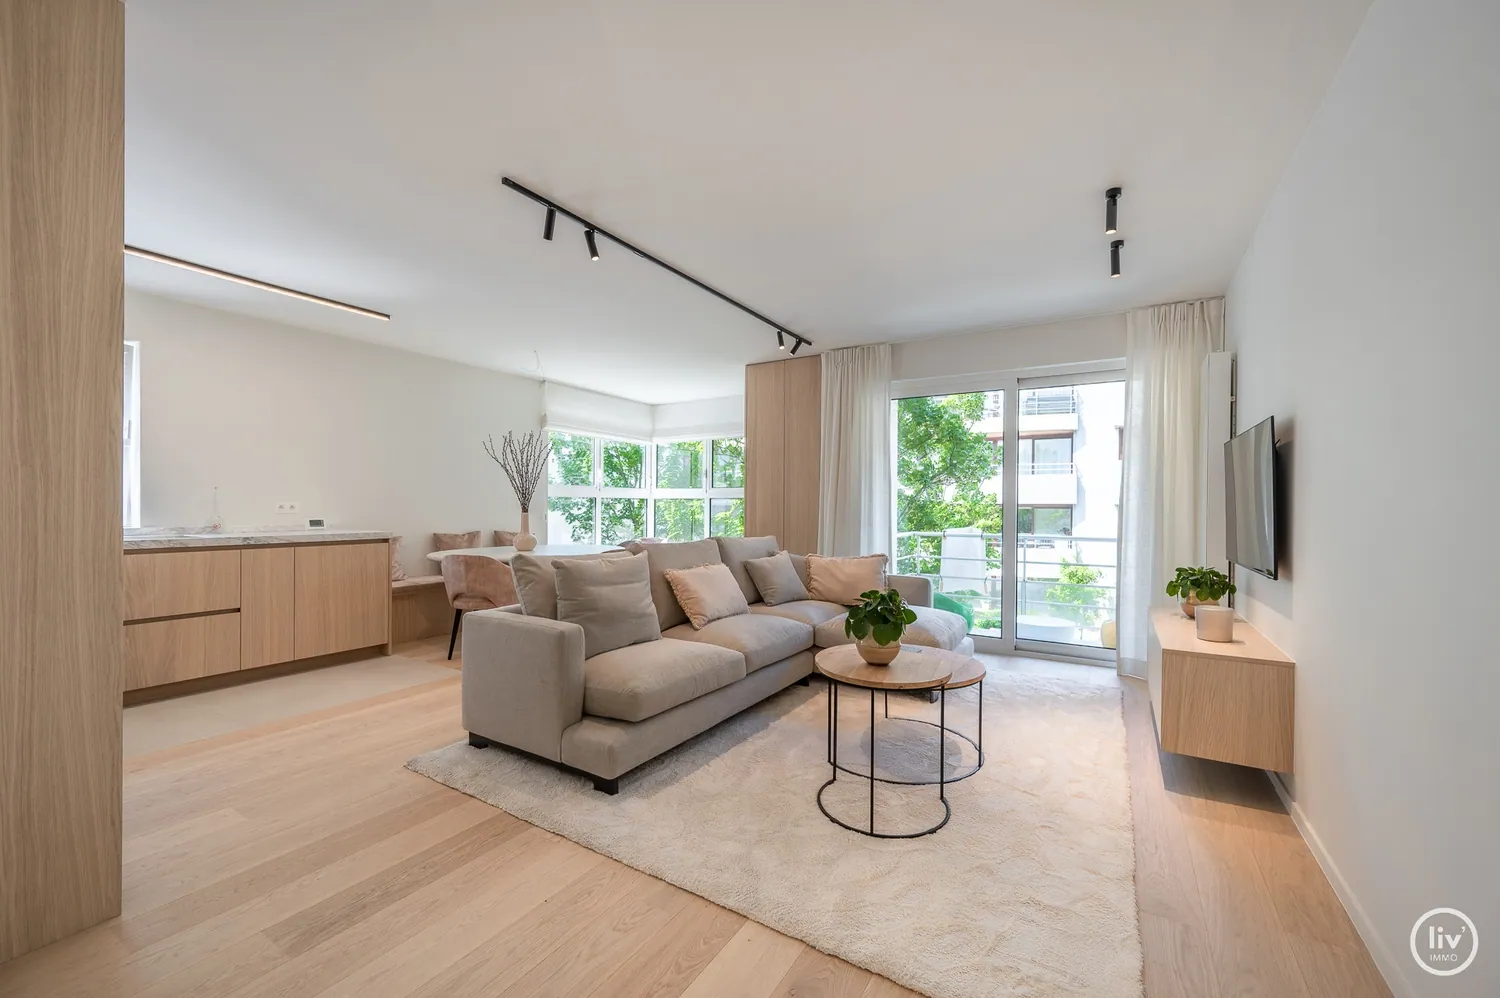 Appartement brillamment rénové avec une agréable terrasse orientée à l'ouest situé près de la Lippenslaan à Knokke.